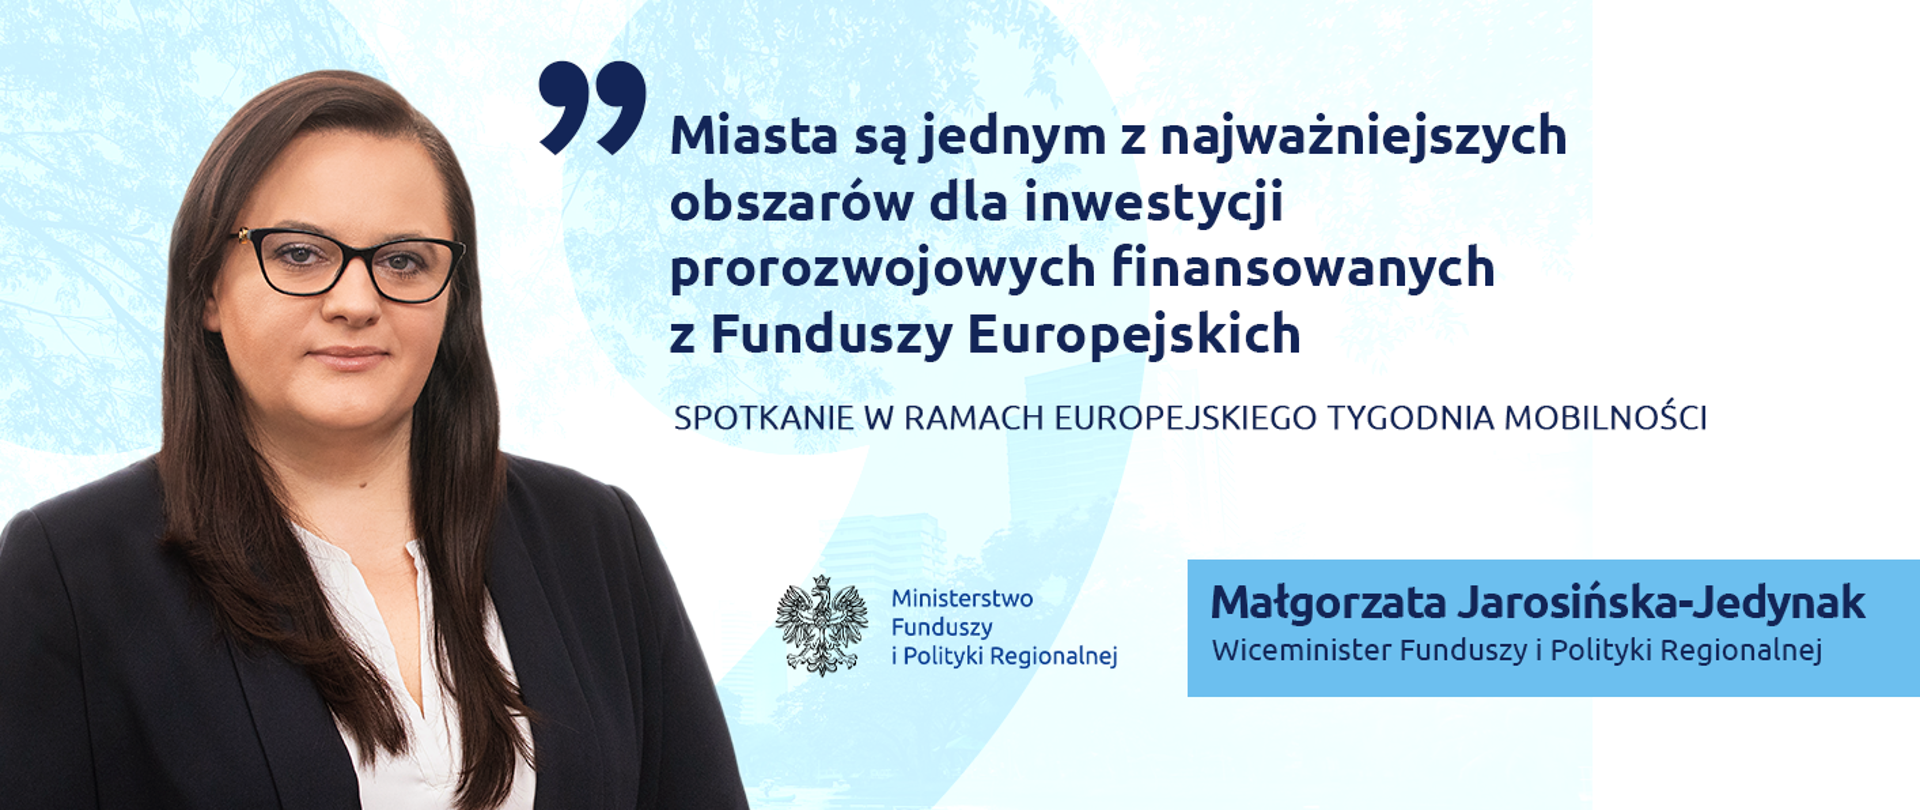 Na grafice zdjęcie wiceminister Małgorzaty Jarosińskiej-Jedynak w czarnej marynarce, obok cytat "Miasta są jednym z najważniejszych obszarów dla inwestycji prorozwojowych finansowanych z Funduszy Europejskich", poniżej logo Ministerstwa Funduszy i Polityki Regionalnej.